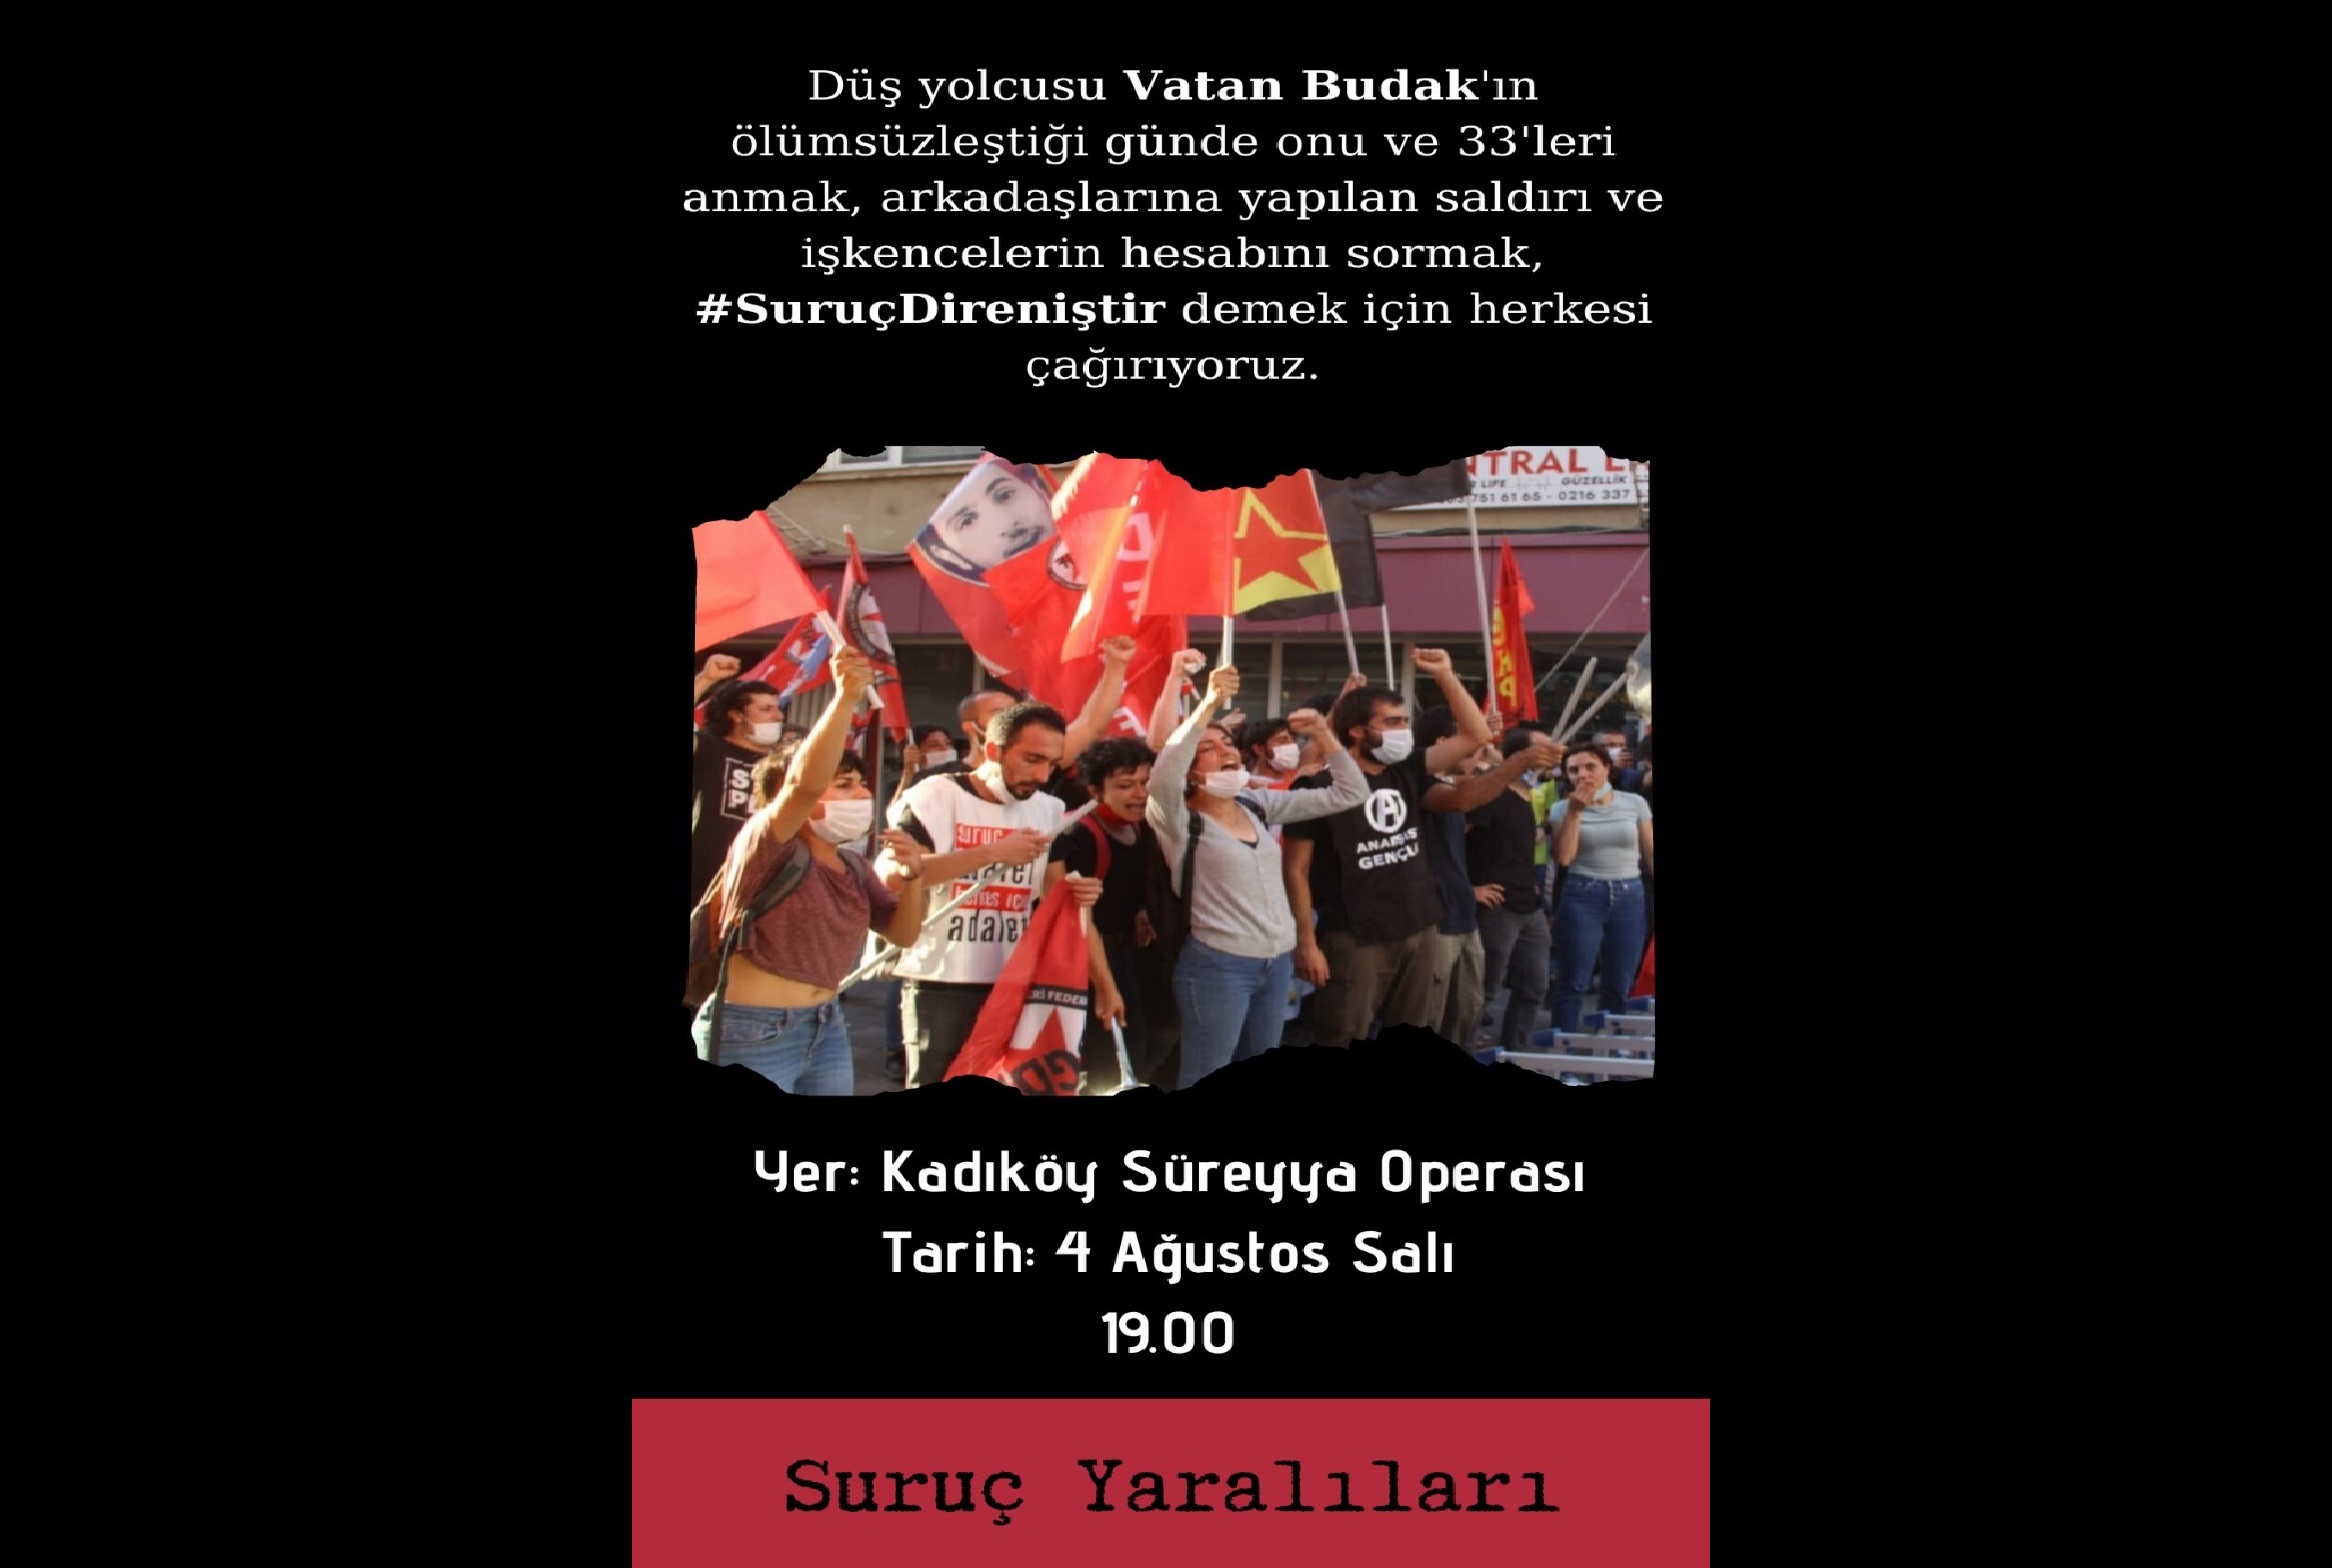 Suruç Yaralıları, anarşist Vatan Budak’ın ölüm yıl dönümü olan 4 Ağustos’ta Kadıköy’e çağırıyor